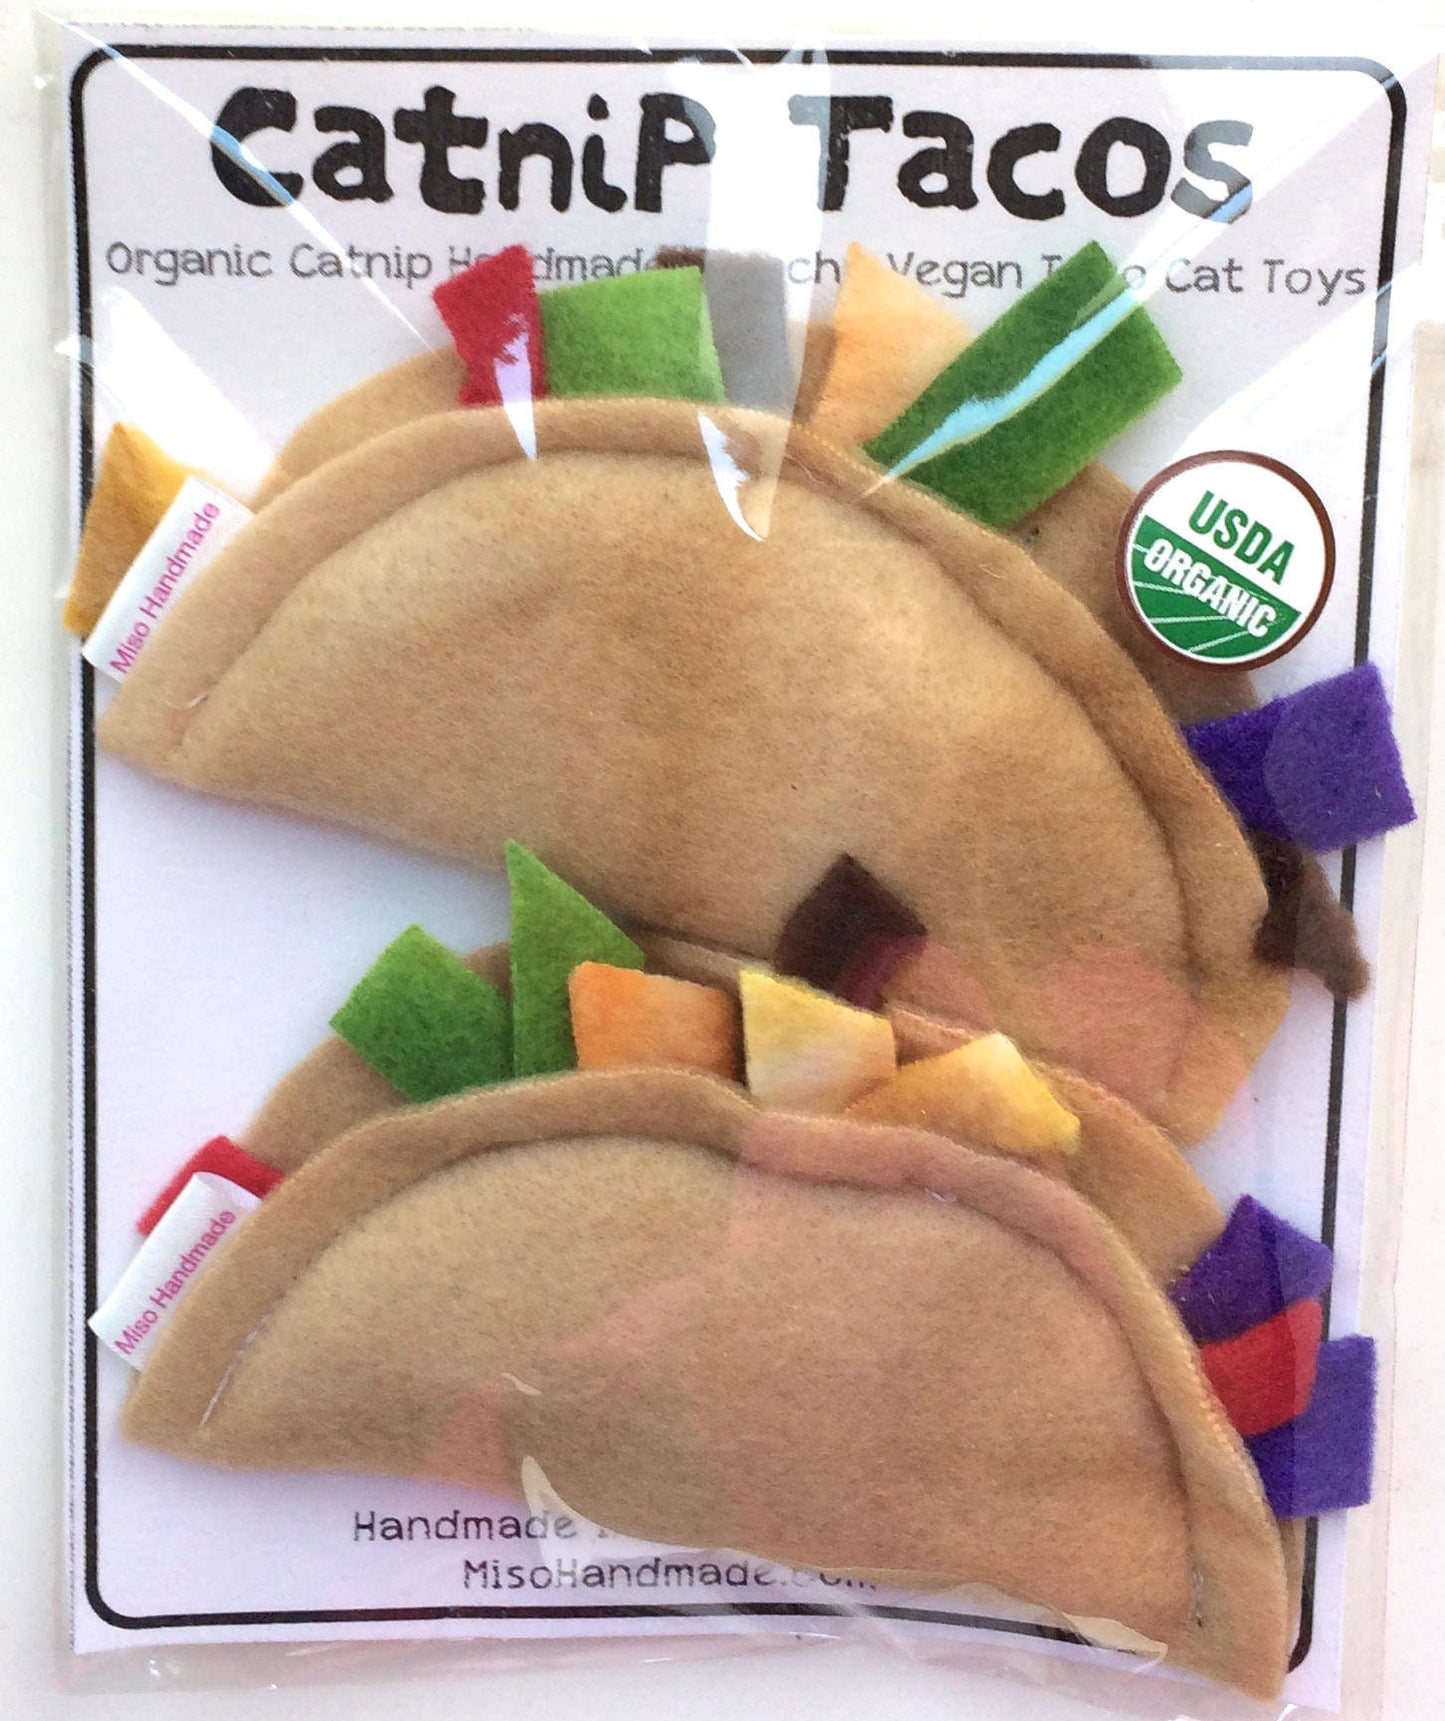 Catnip Tacos